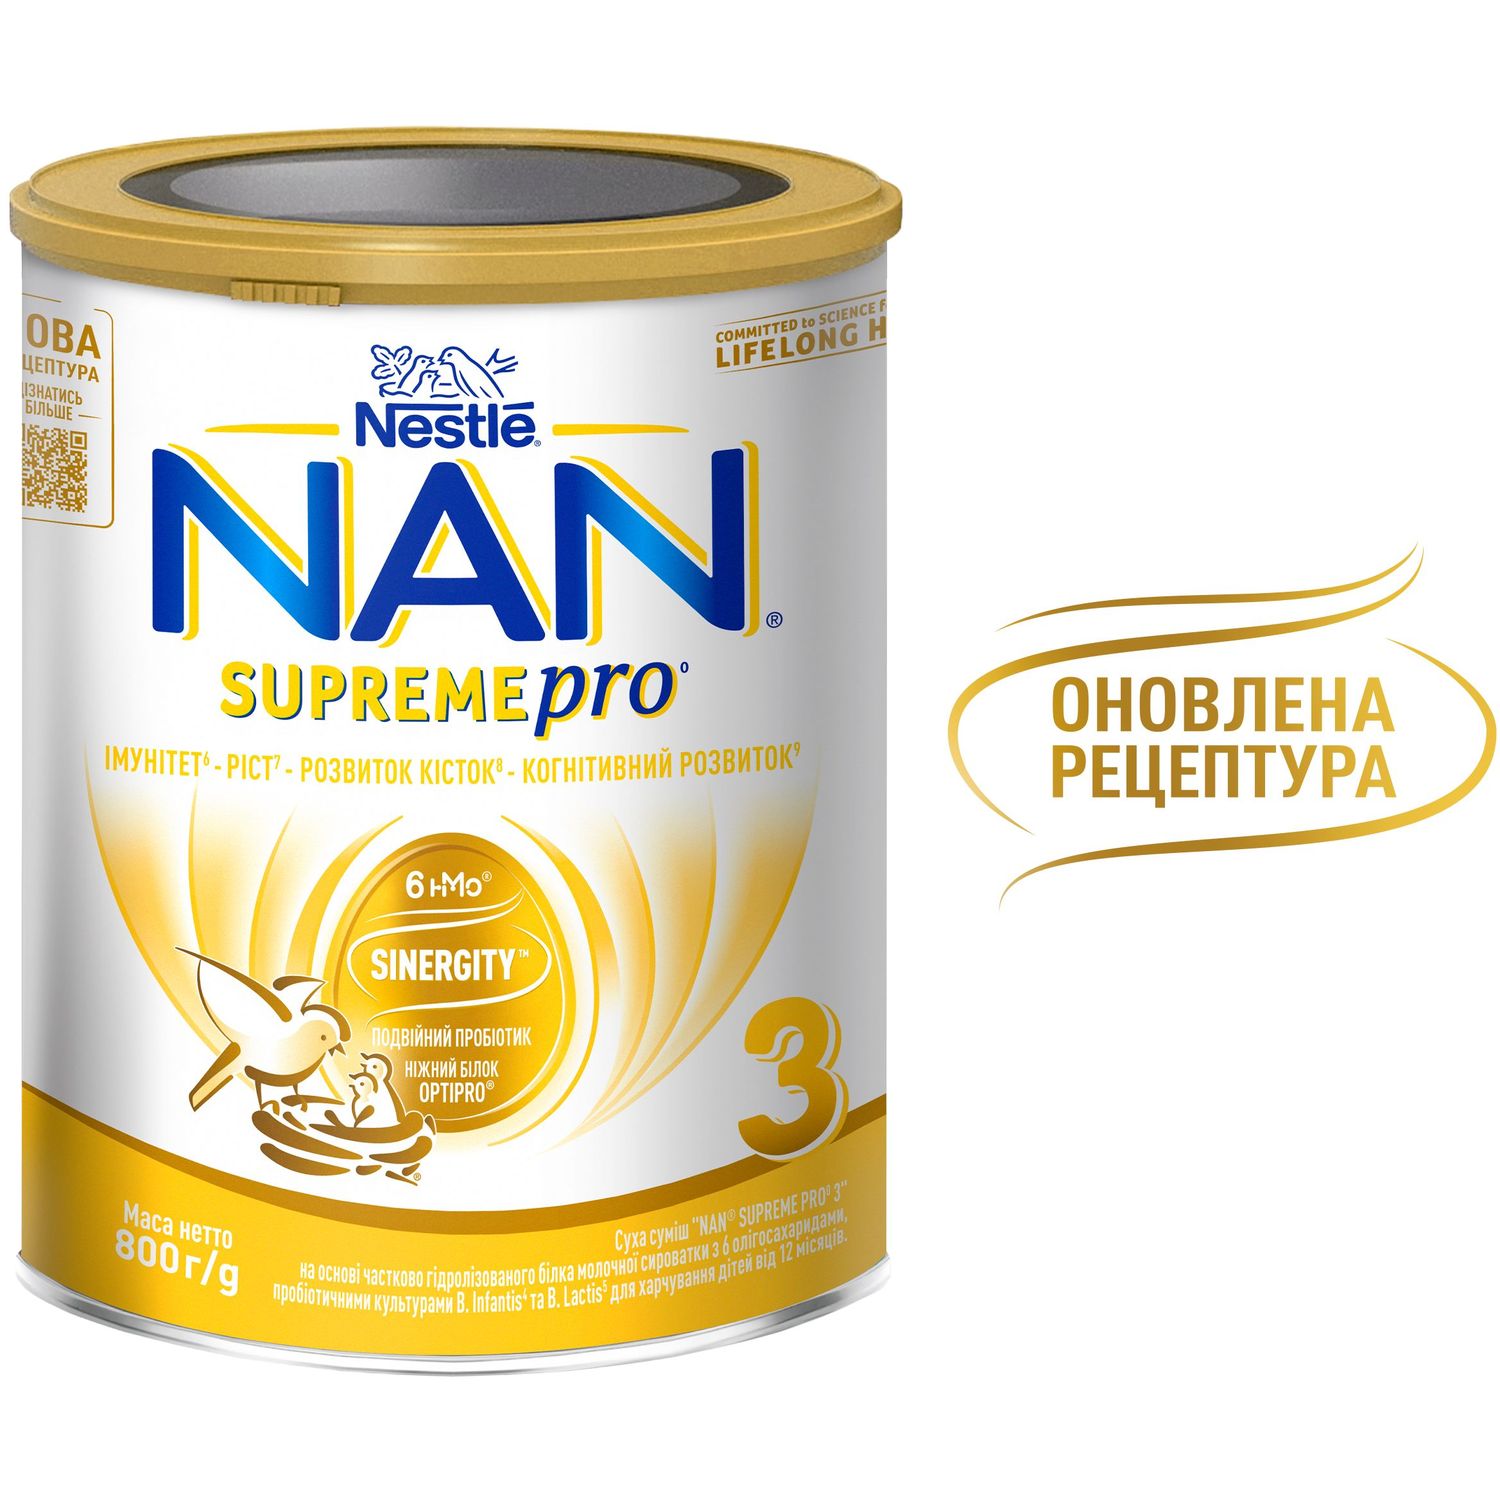 Суха суміш NAN 3 Supreme Pro з 6 олігосахаридами та подвійним пробіотиком для харчування дітей від 12 місяців 800 г - фото 5